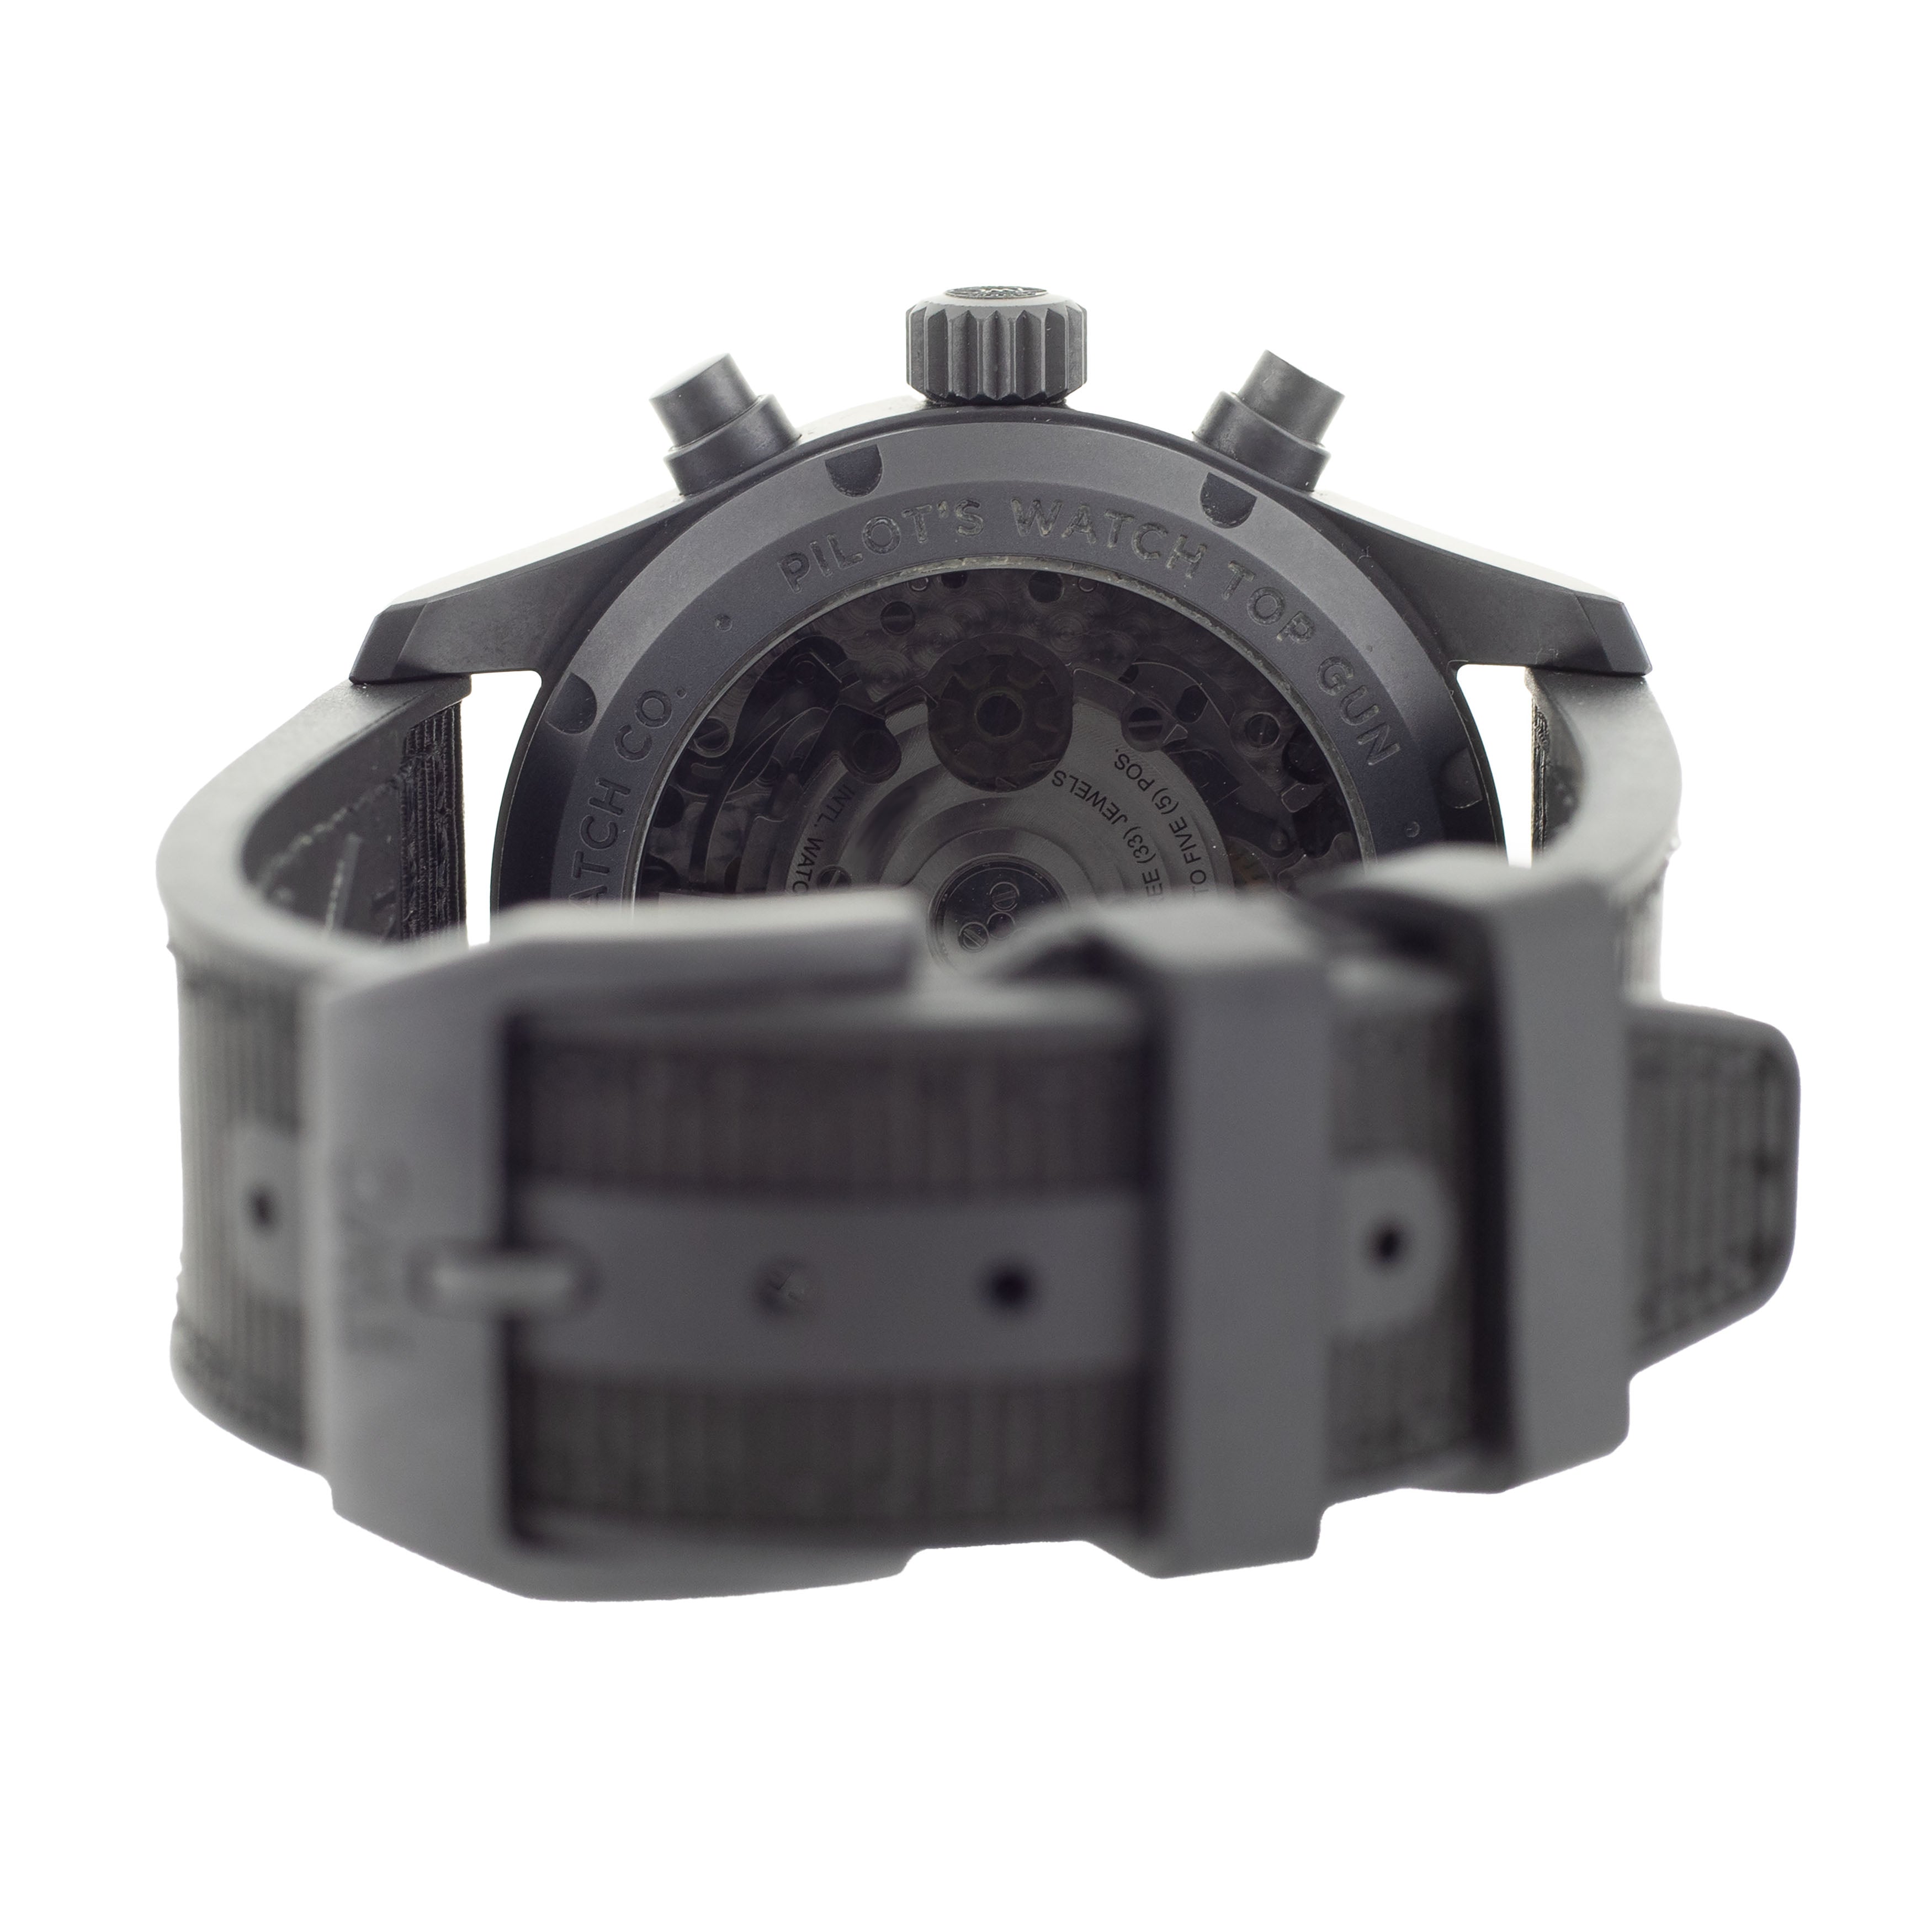 IWC Pilot's Watch Top Gun Ceramic & Titanium Black Dial 41mm IW388106 Full Set